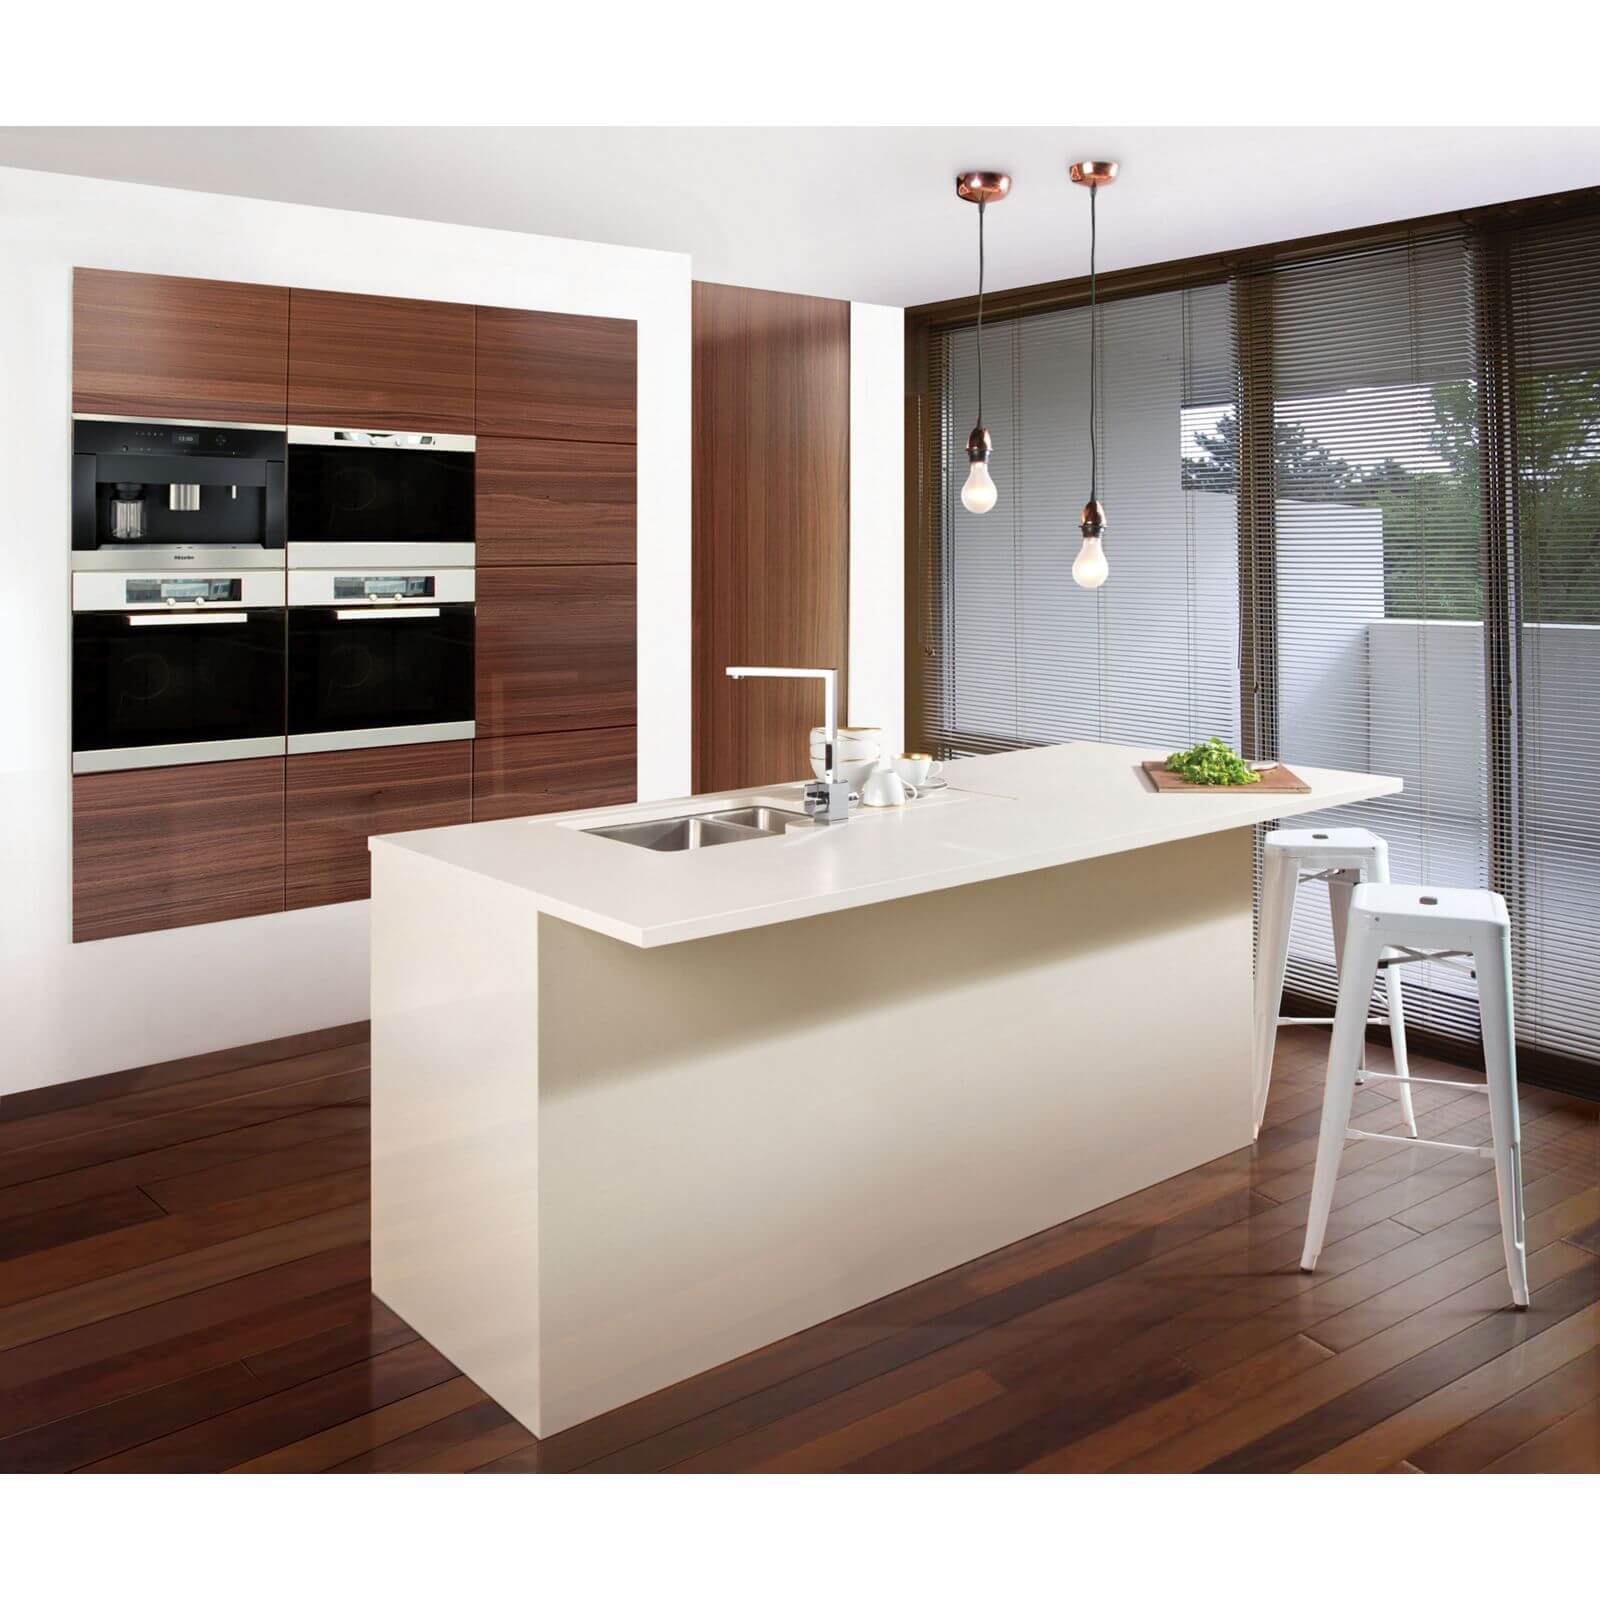 Maia Fossil Kitchen Worktop - 360 x 90 x 2.8cm